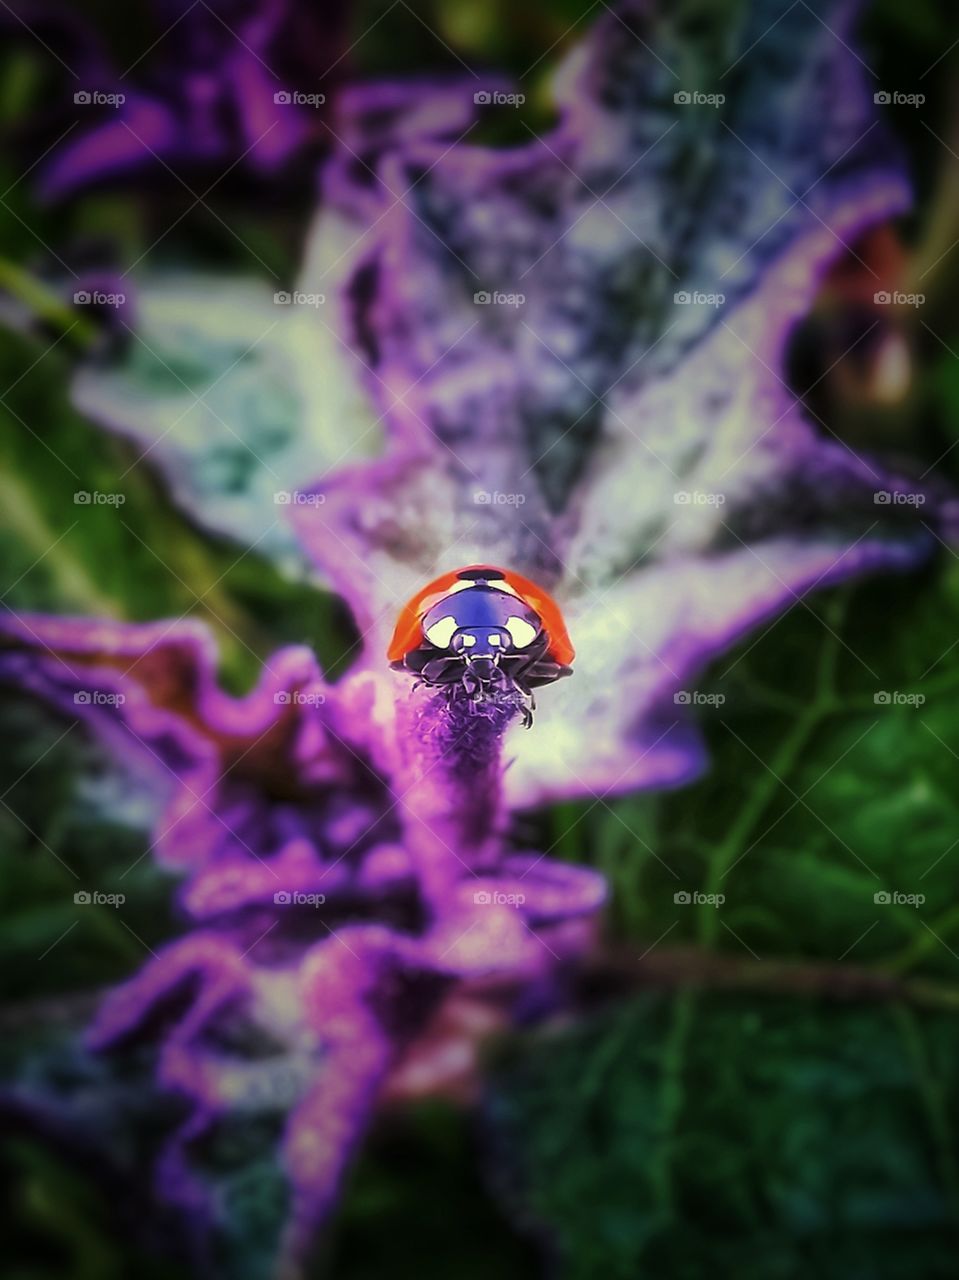 Ladybug on a weed close up